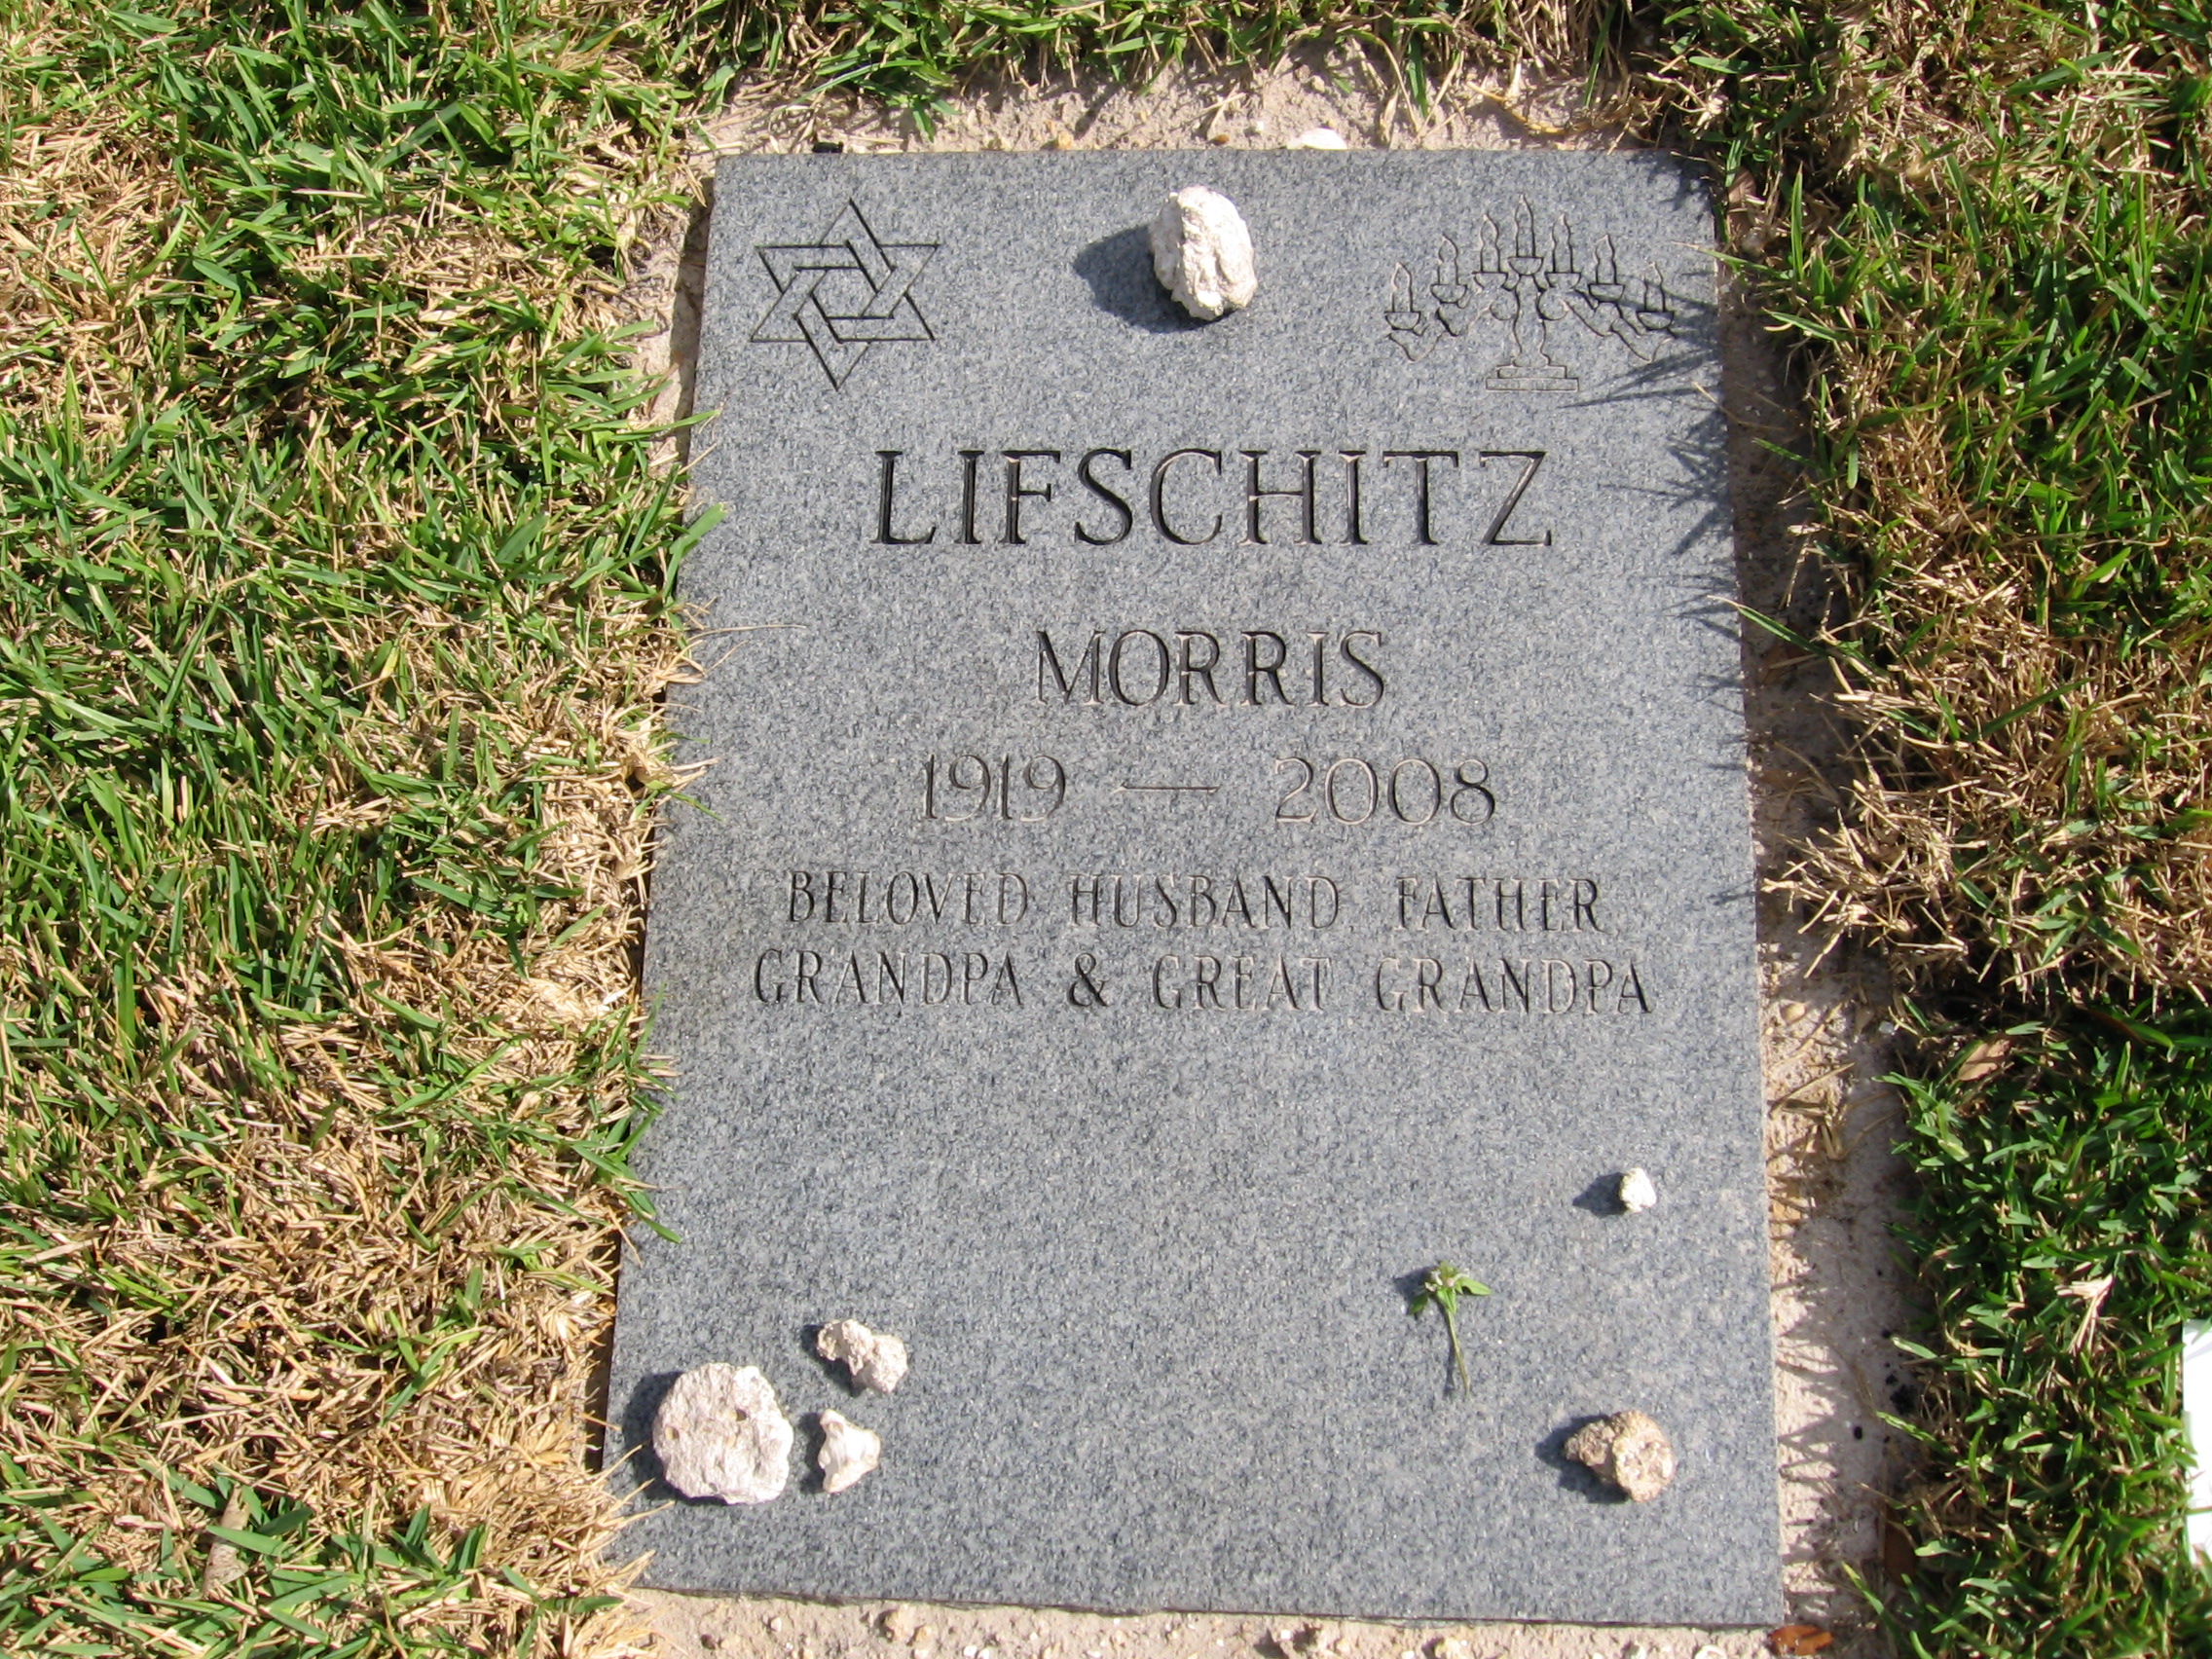 Morris Lifschitz